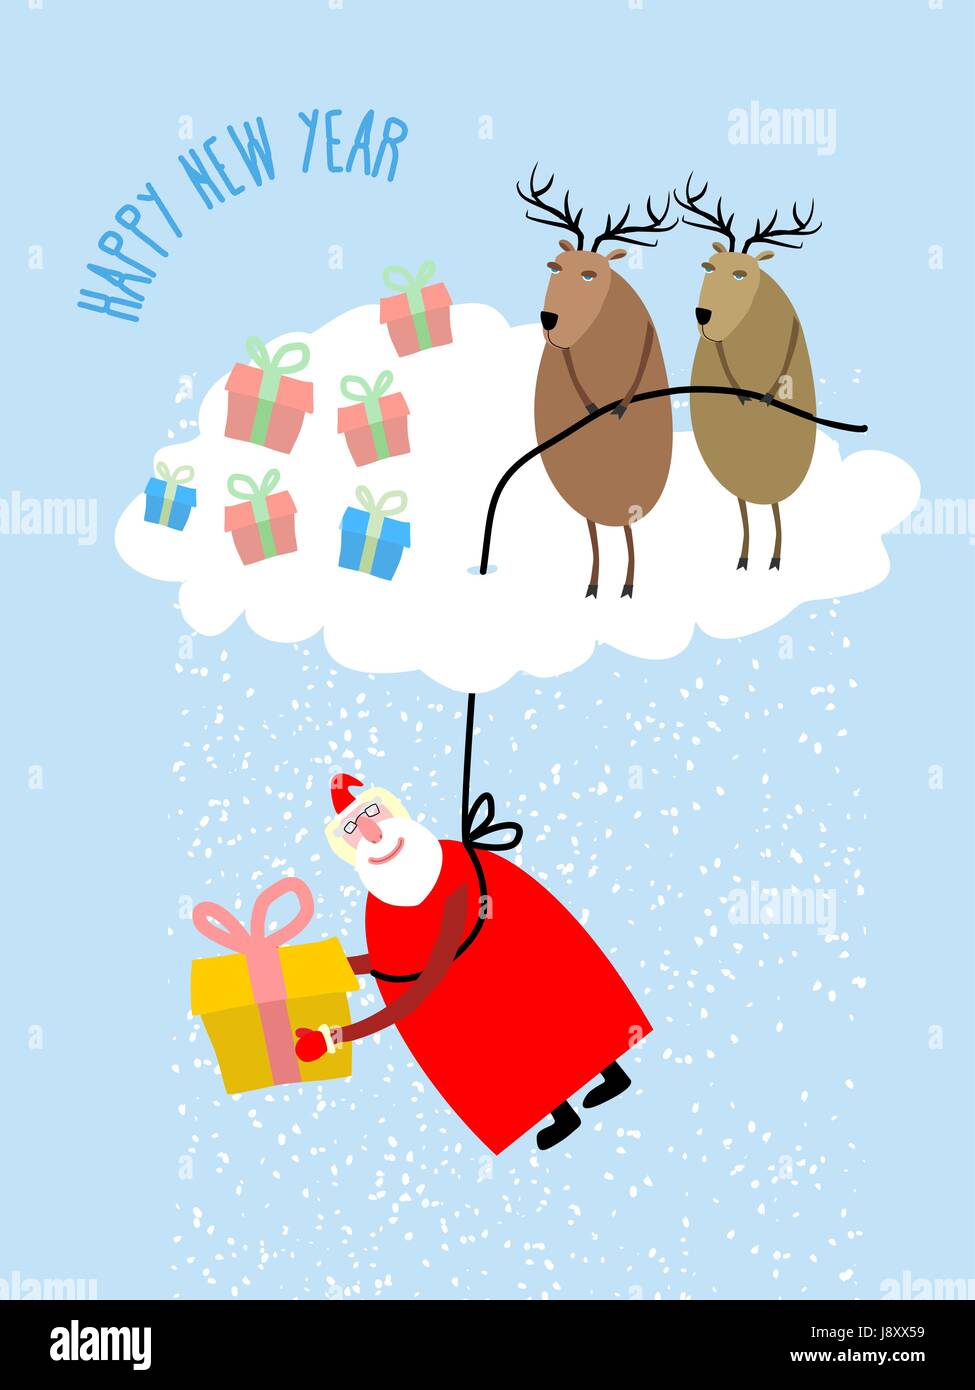 Santa Claus kommt herab auf einem Seil und gibt ein Geschenk. Hirsch auf Wolke Abdeckung Santa Claus. Schnee aus den Wolken. Weihnachts-Grußkarte. Vektor-Illustration für Stock Vektor